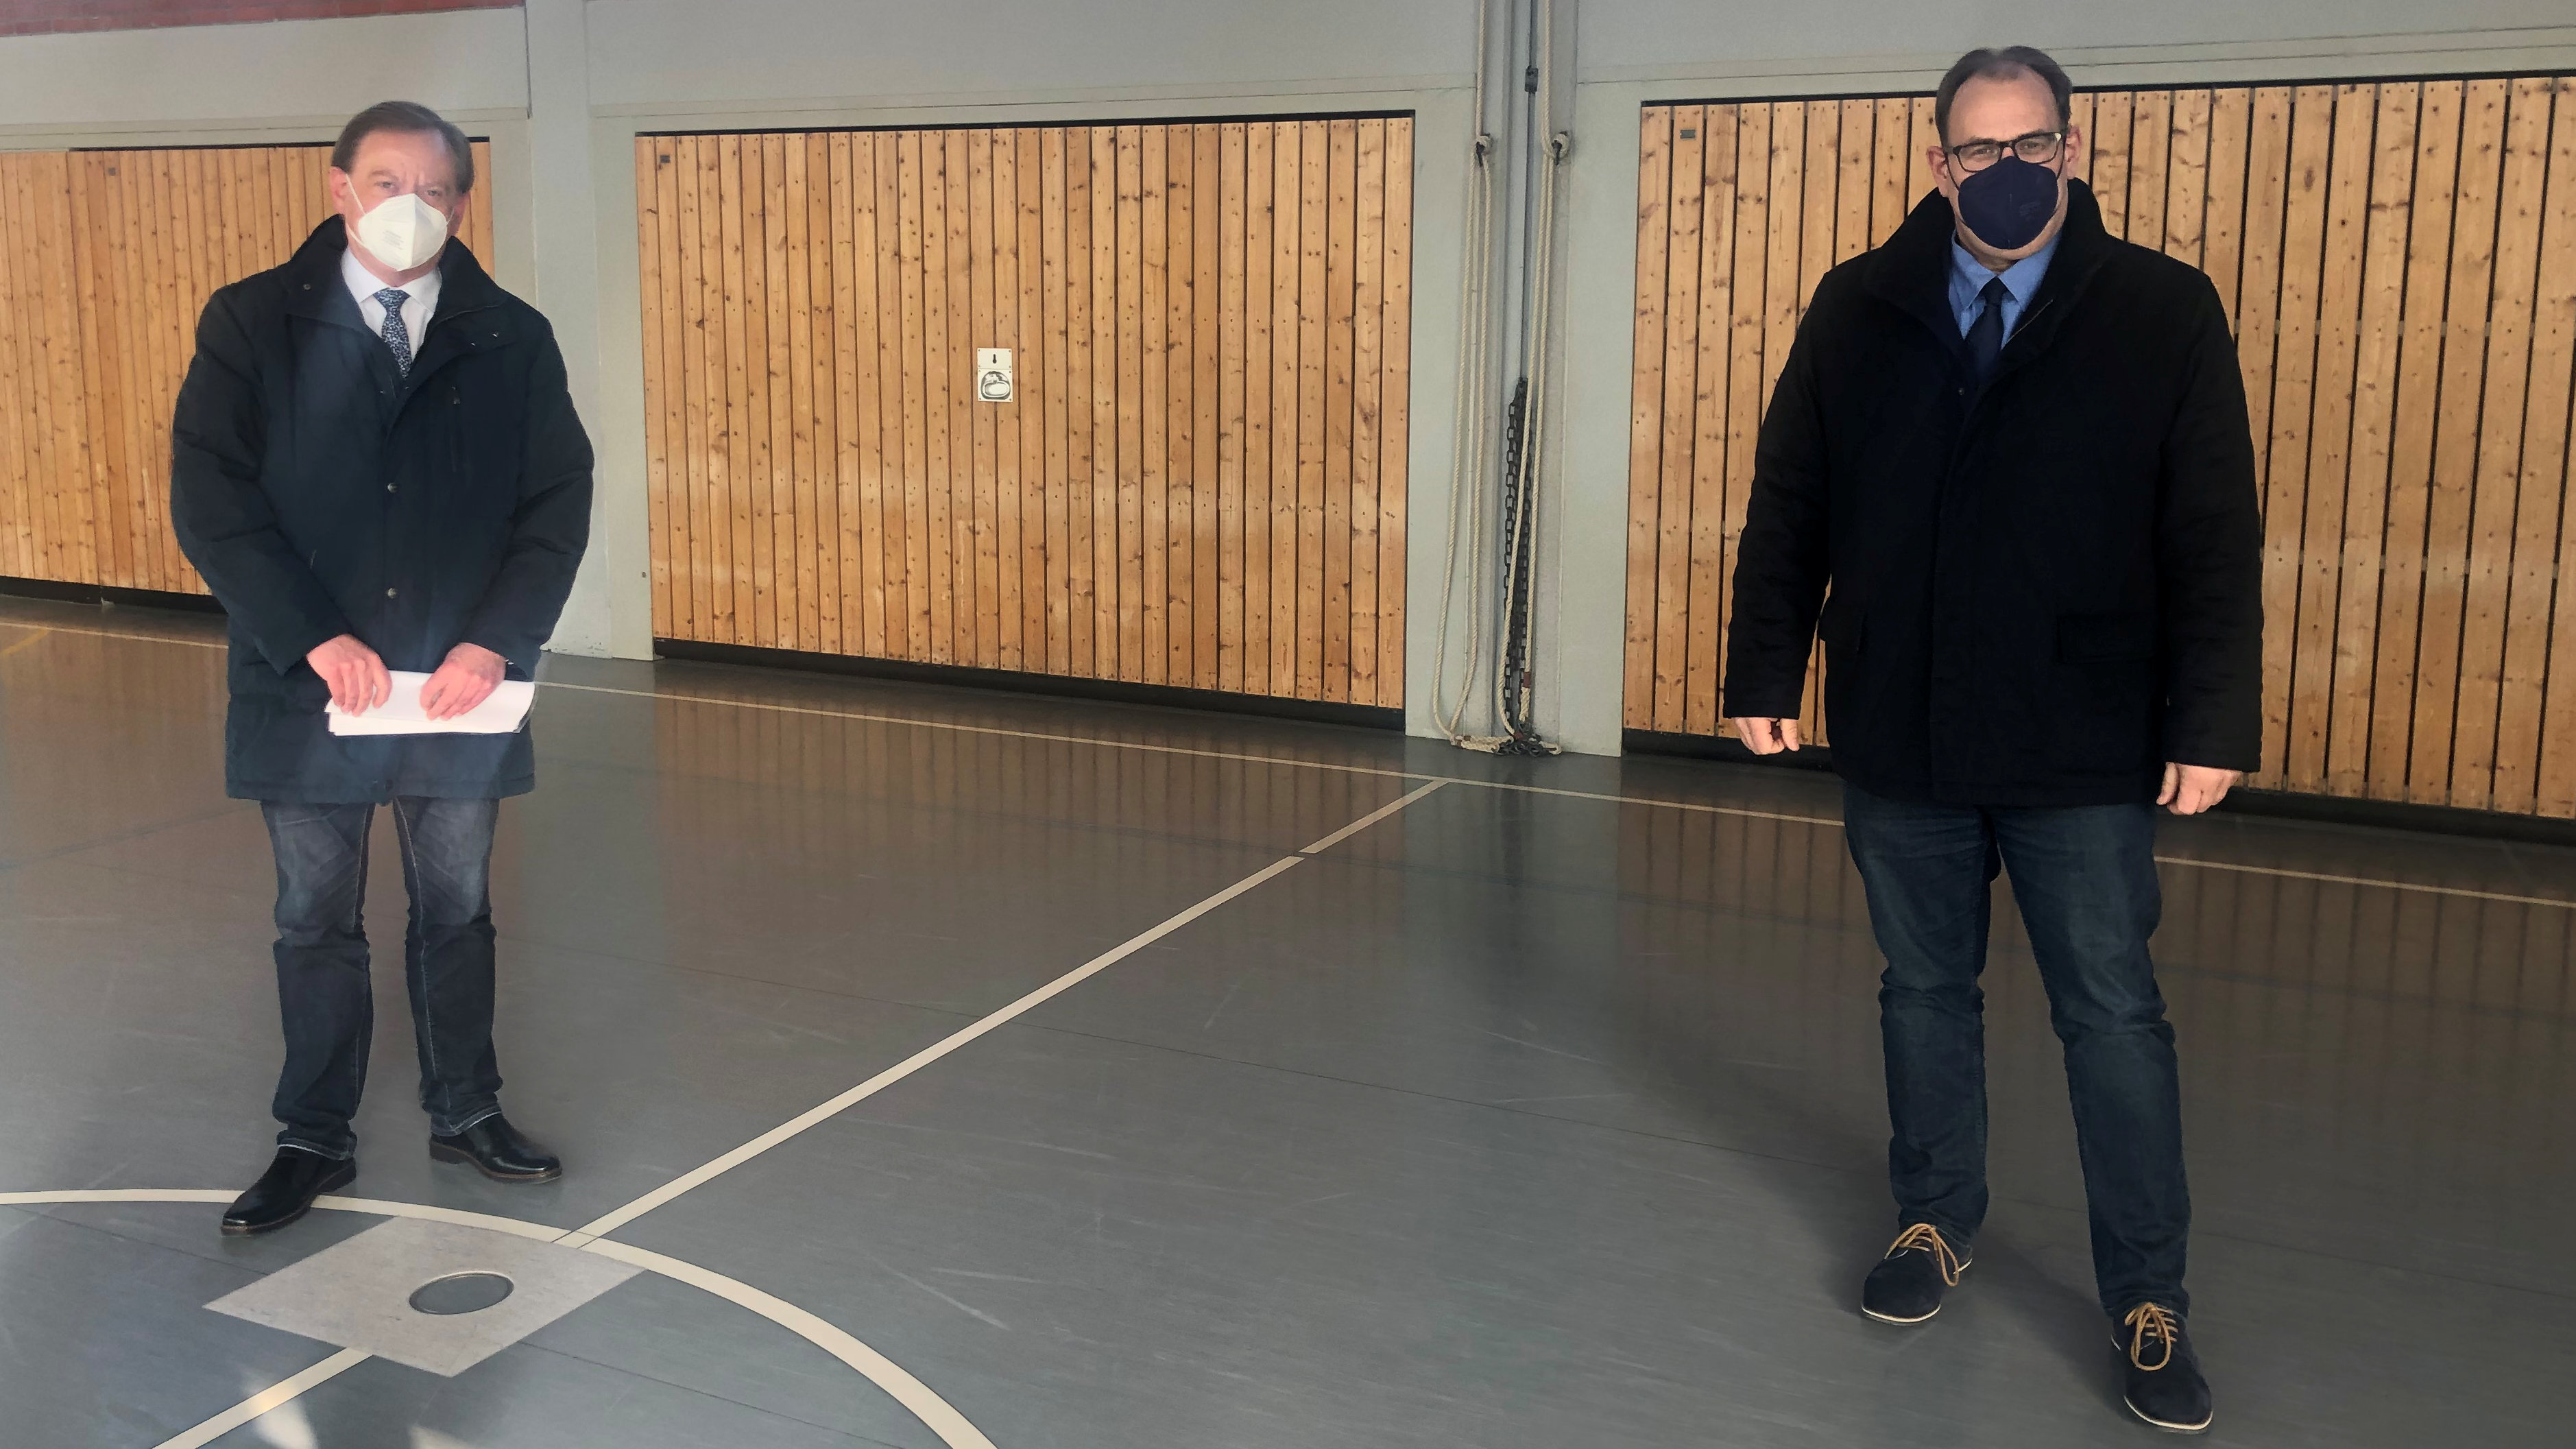 Ingo Gädechens gemeinsam mit dem Neustädter Bürgermeister Mirko Spieckermann bei dem Vor-Ort-Termin in der Sporthalle der Grundschule an der Neustädter Bucht